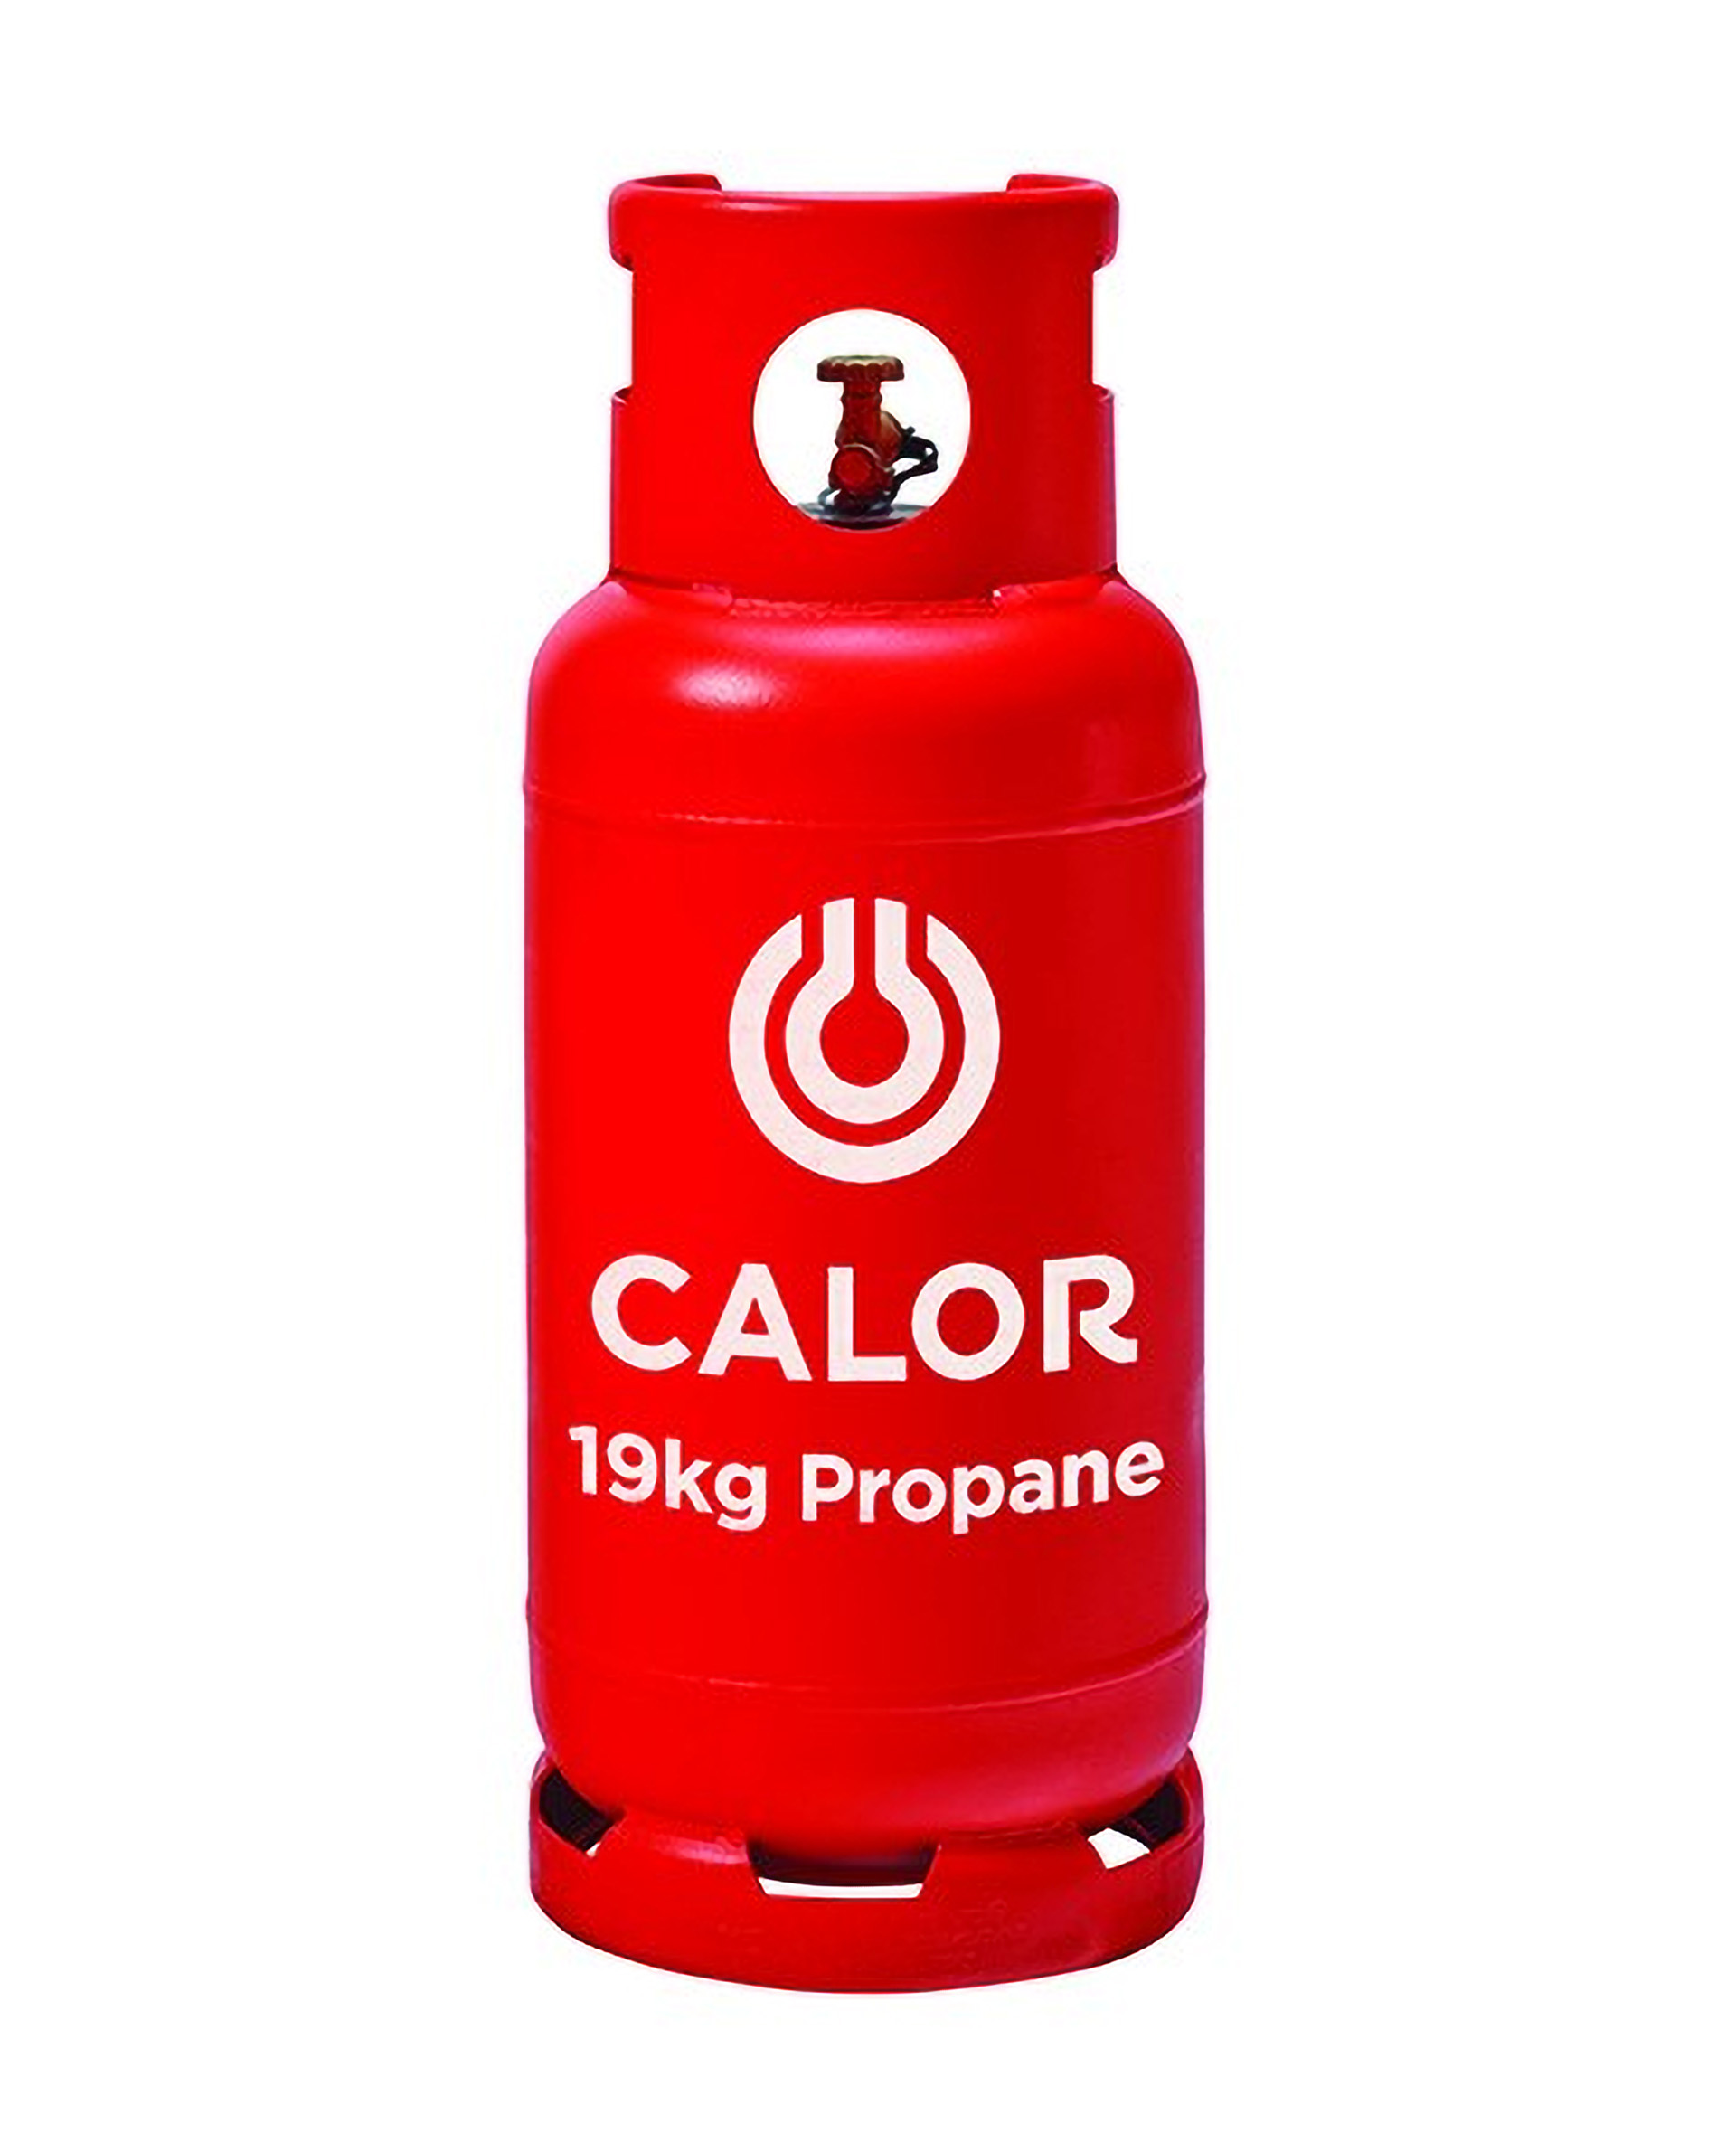 19kg propane gas bottle